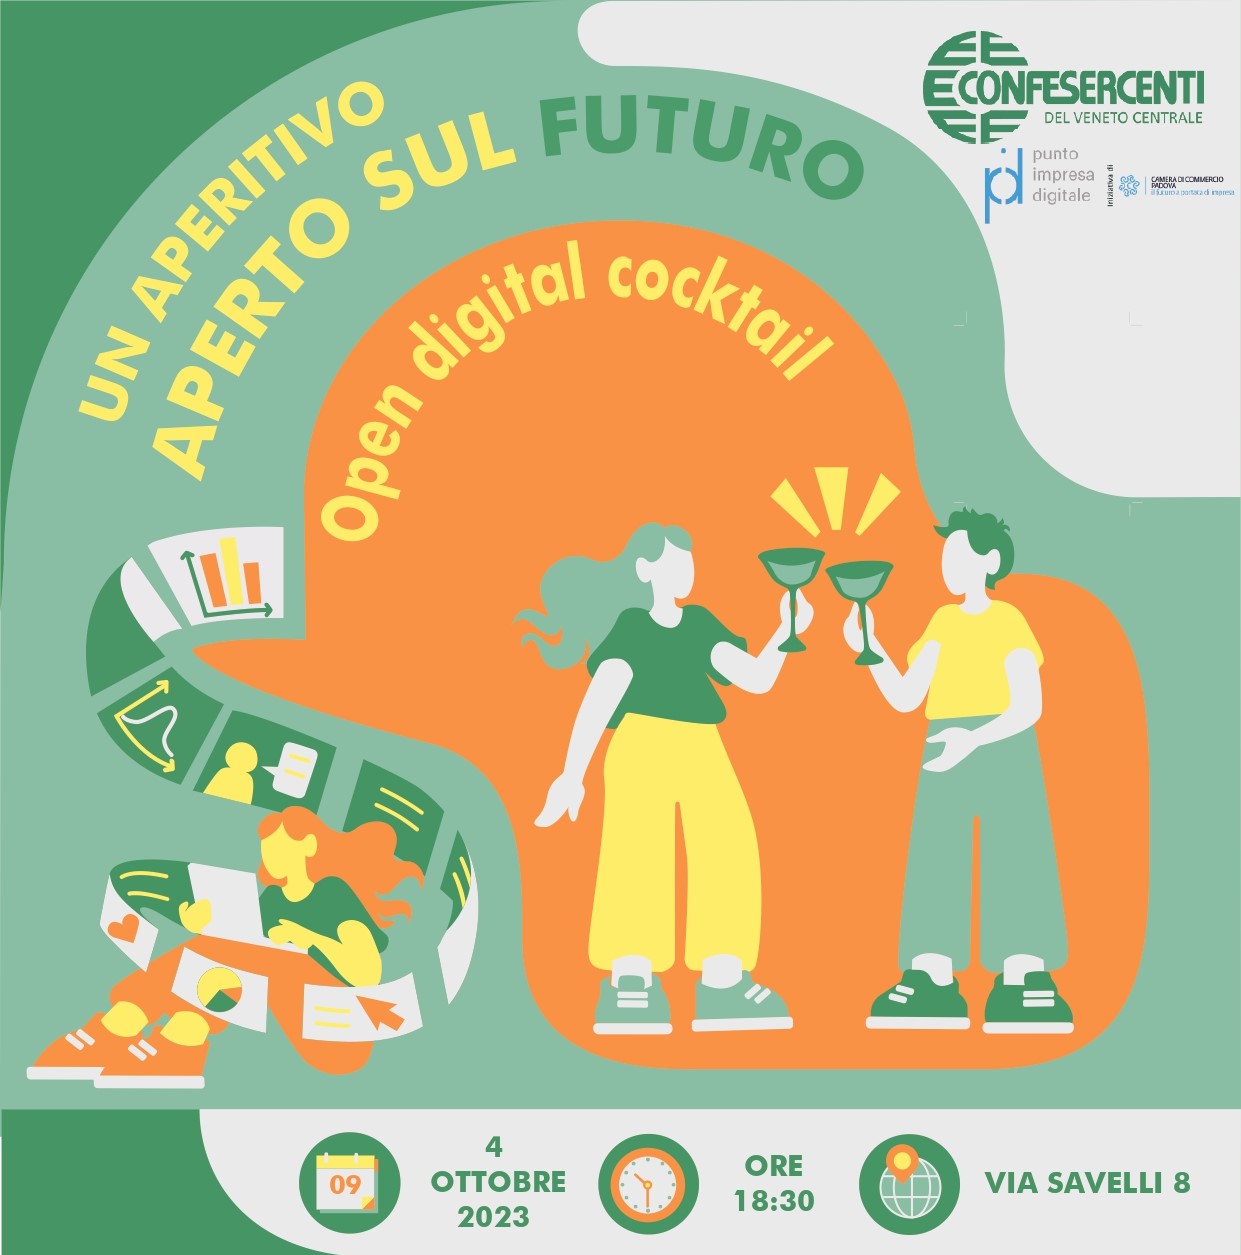 Veneto Centrale: “Open Digital Cocktail”, un aperitivo aperto sul futuro delle imprese